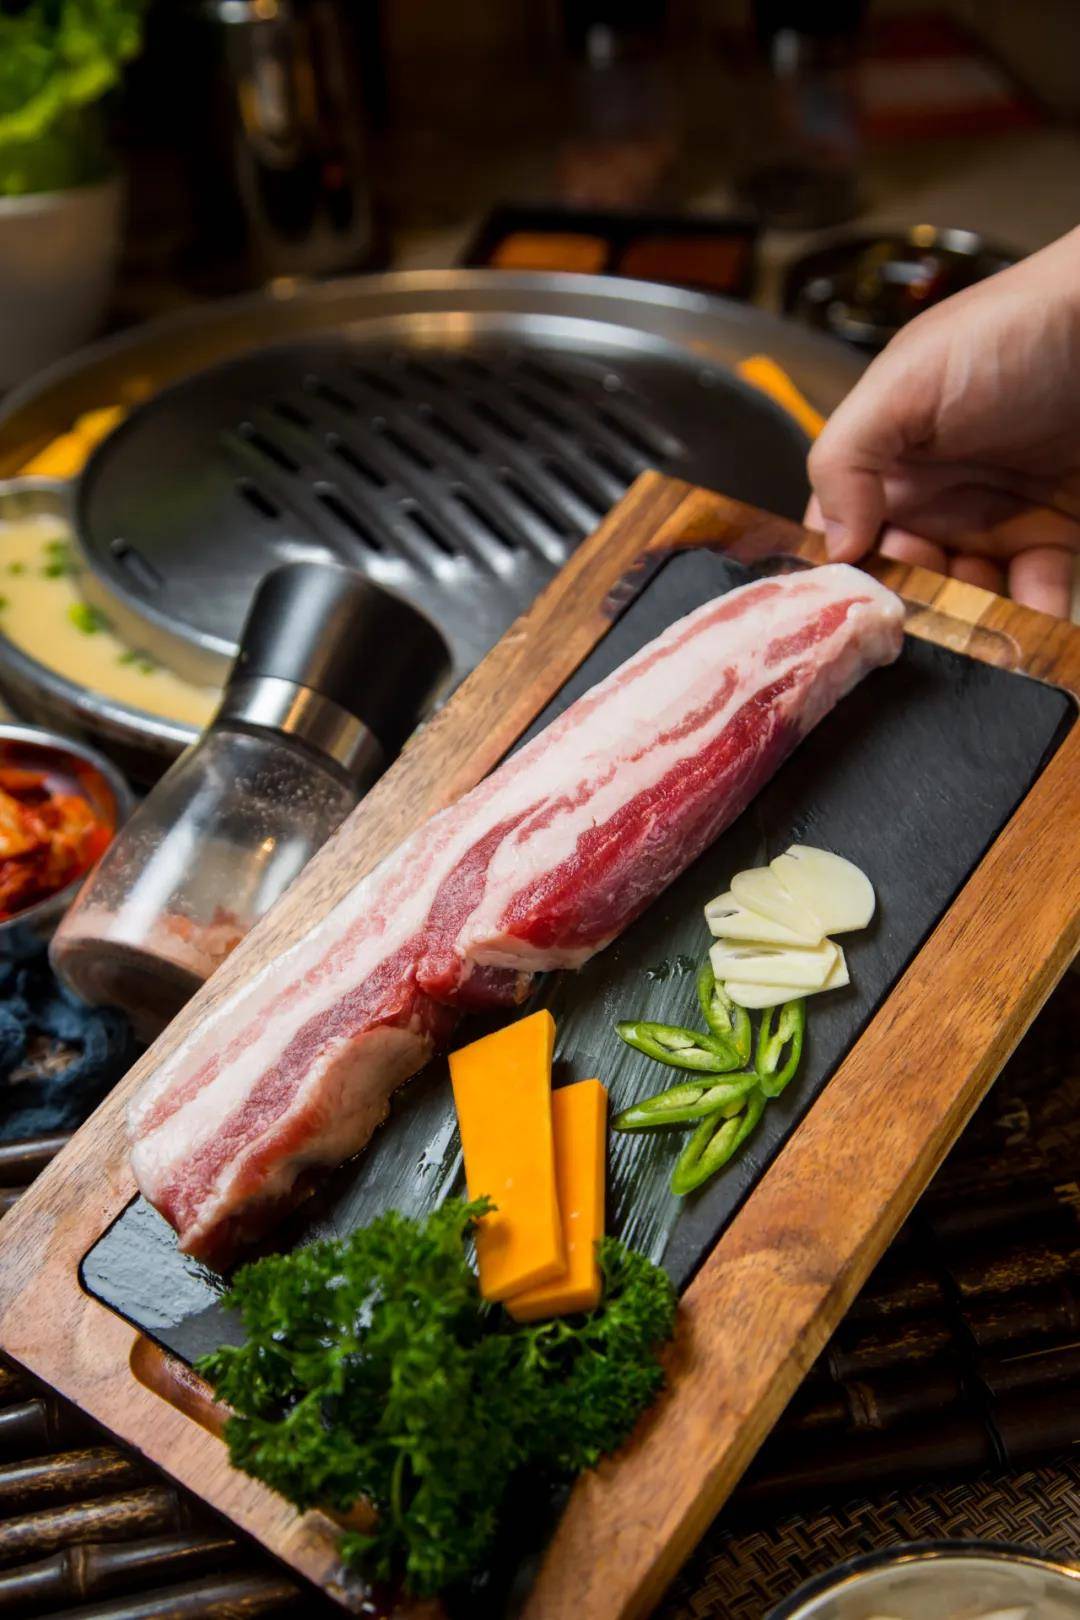 秉承高品质匠人精神,哈哈碳都韩国烤肉收获超高人气